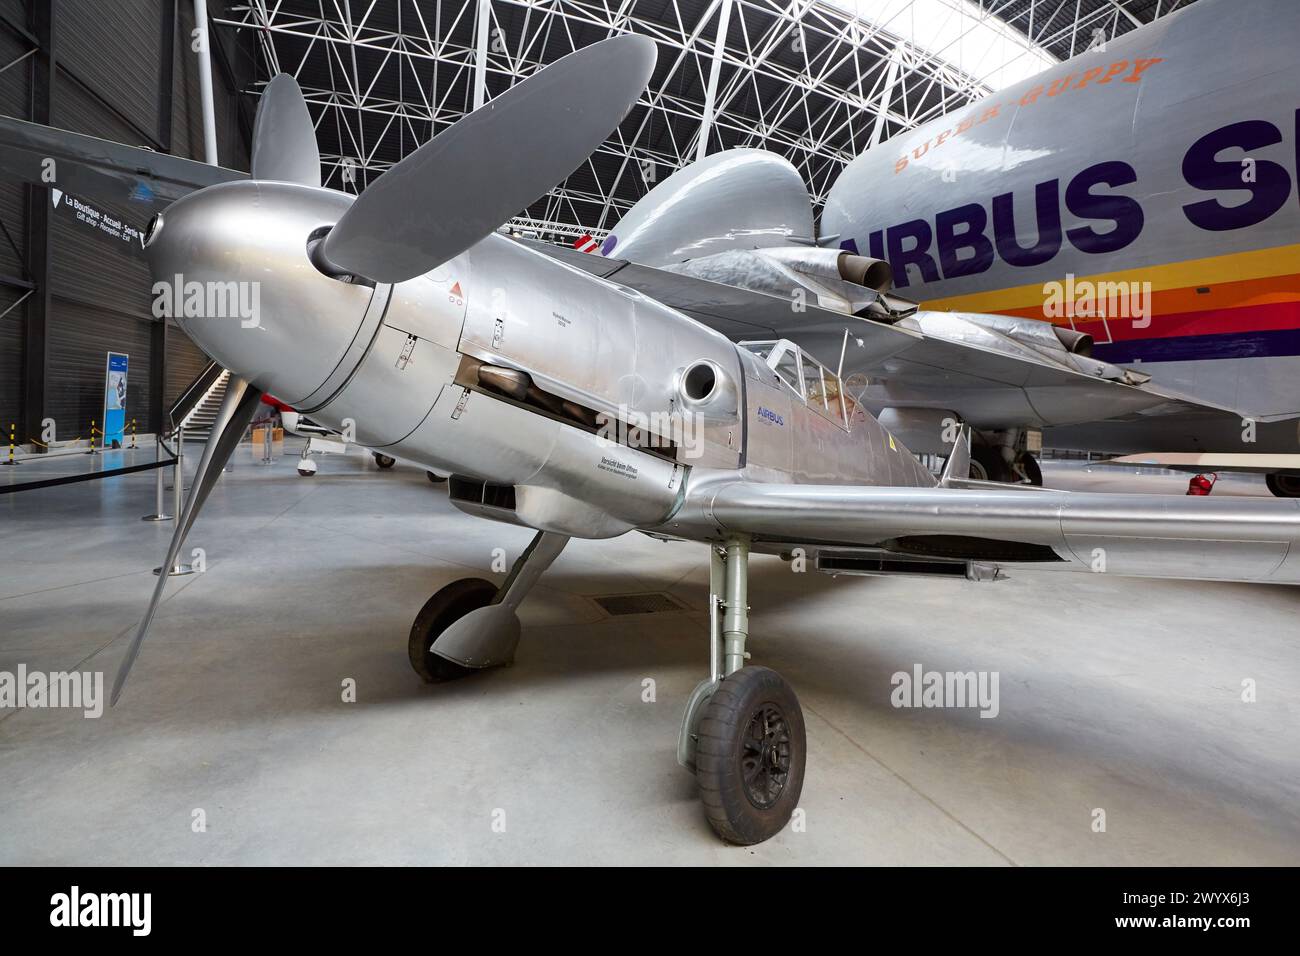 Messerschmitt Bf 109 et Super Guppy SGT avion. Aeroscopia. Musée aéronautique. Toulouse. Haute Garonne. La France. Banque D'Images